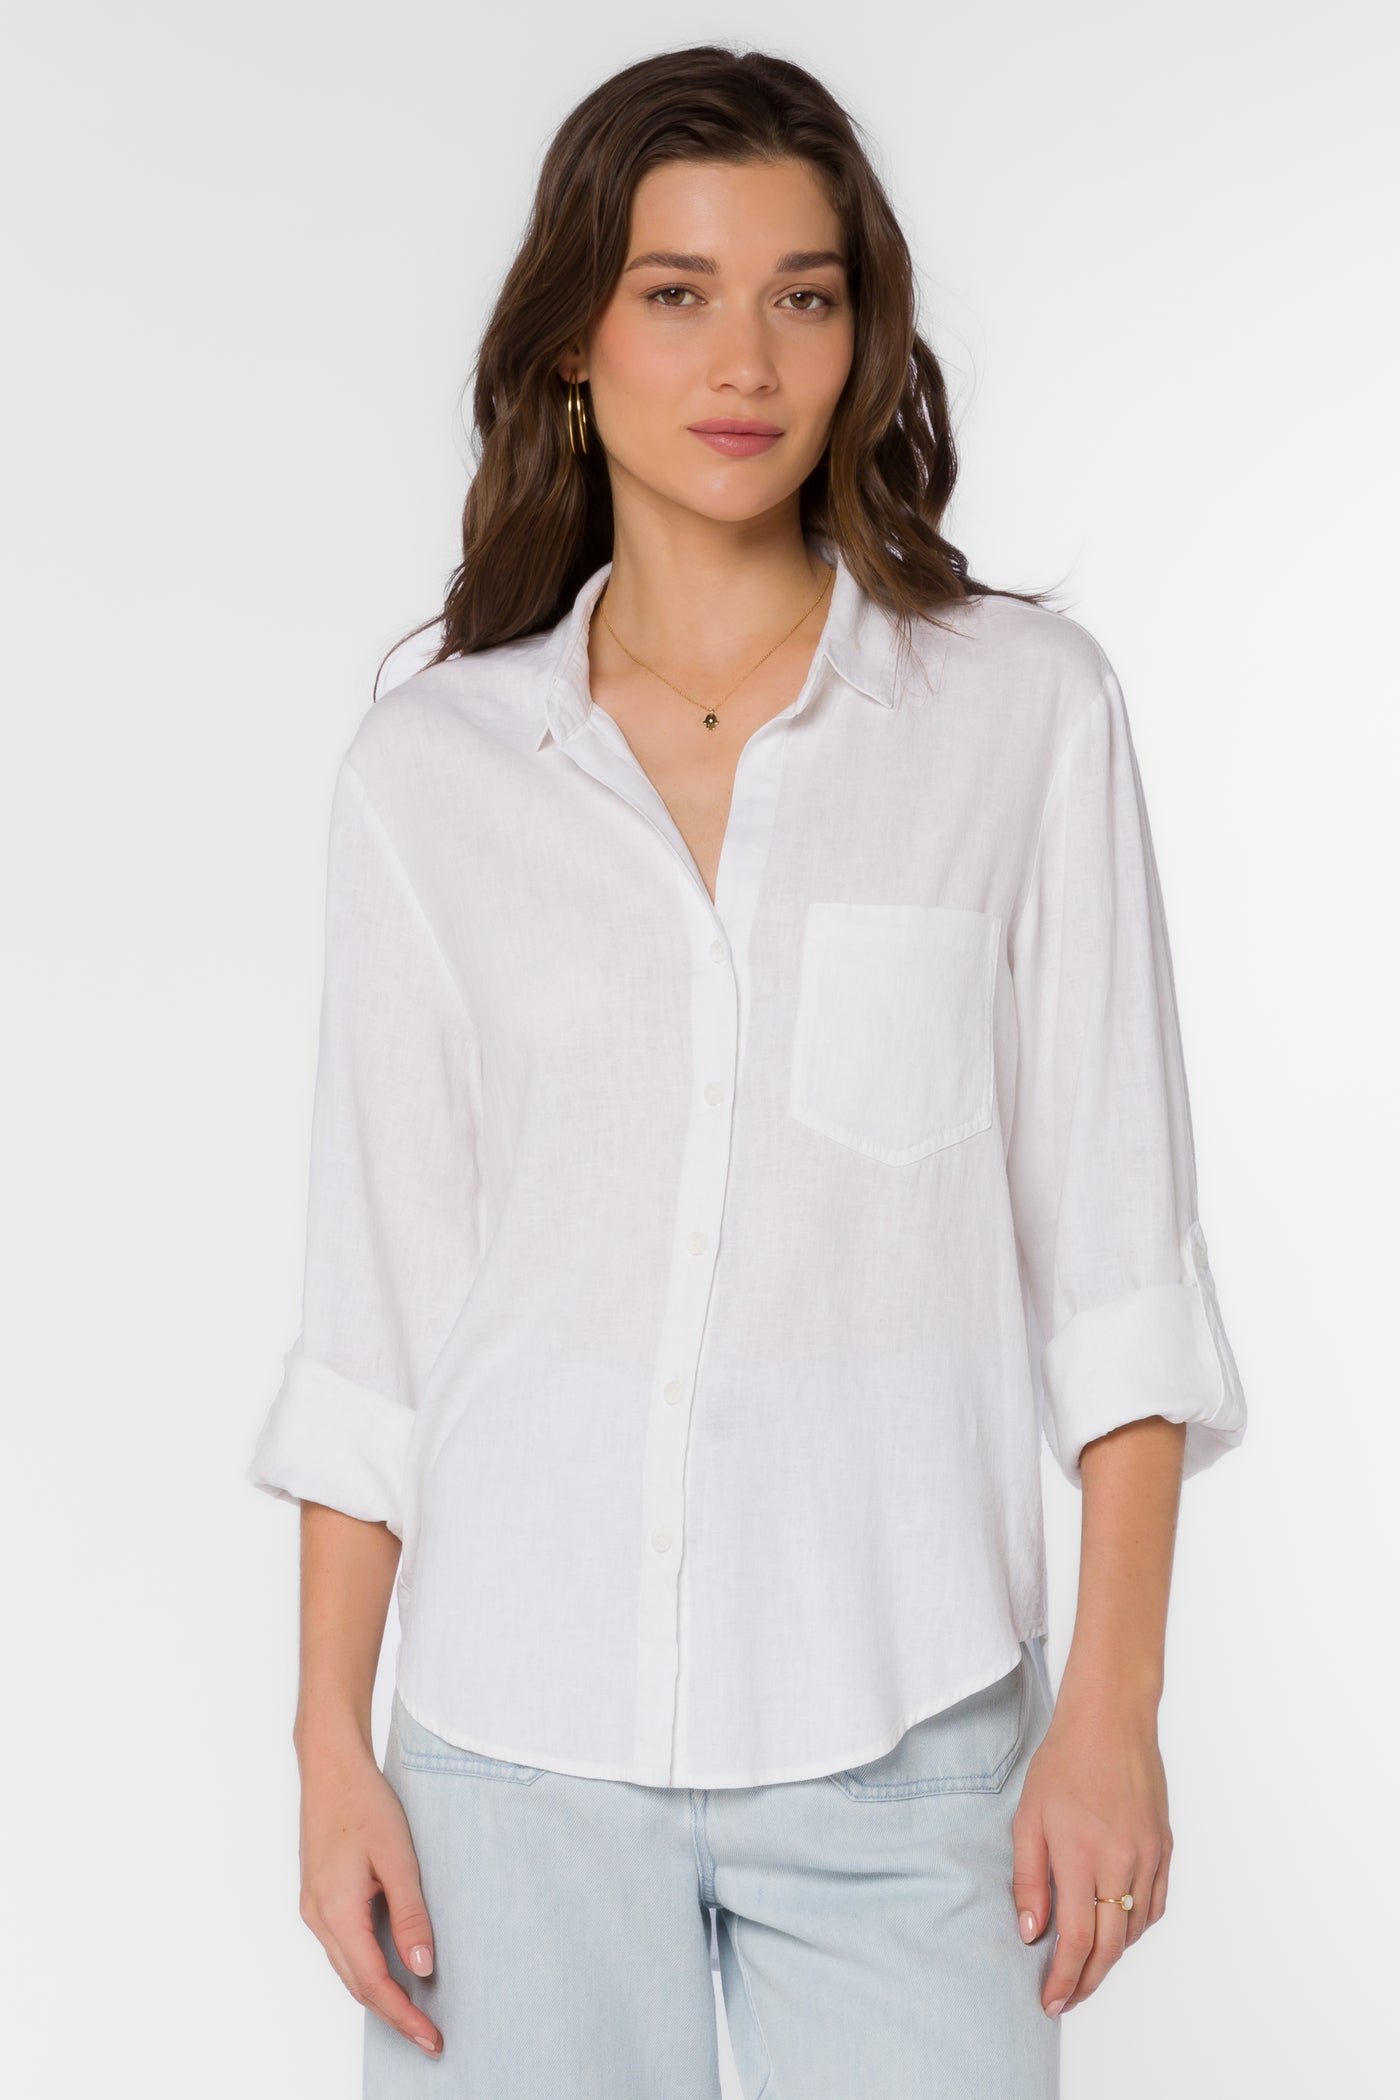 McCoy White Shirt - Tops - Velvet Heart Clothing